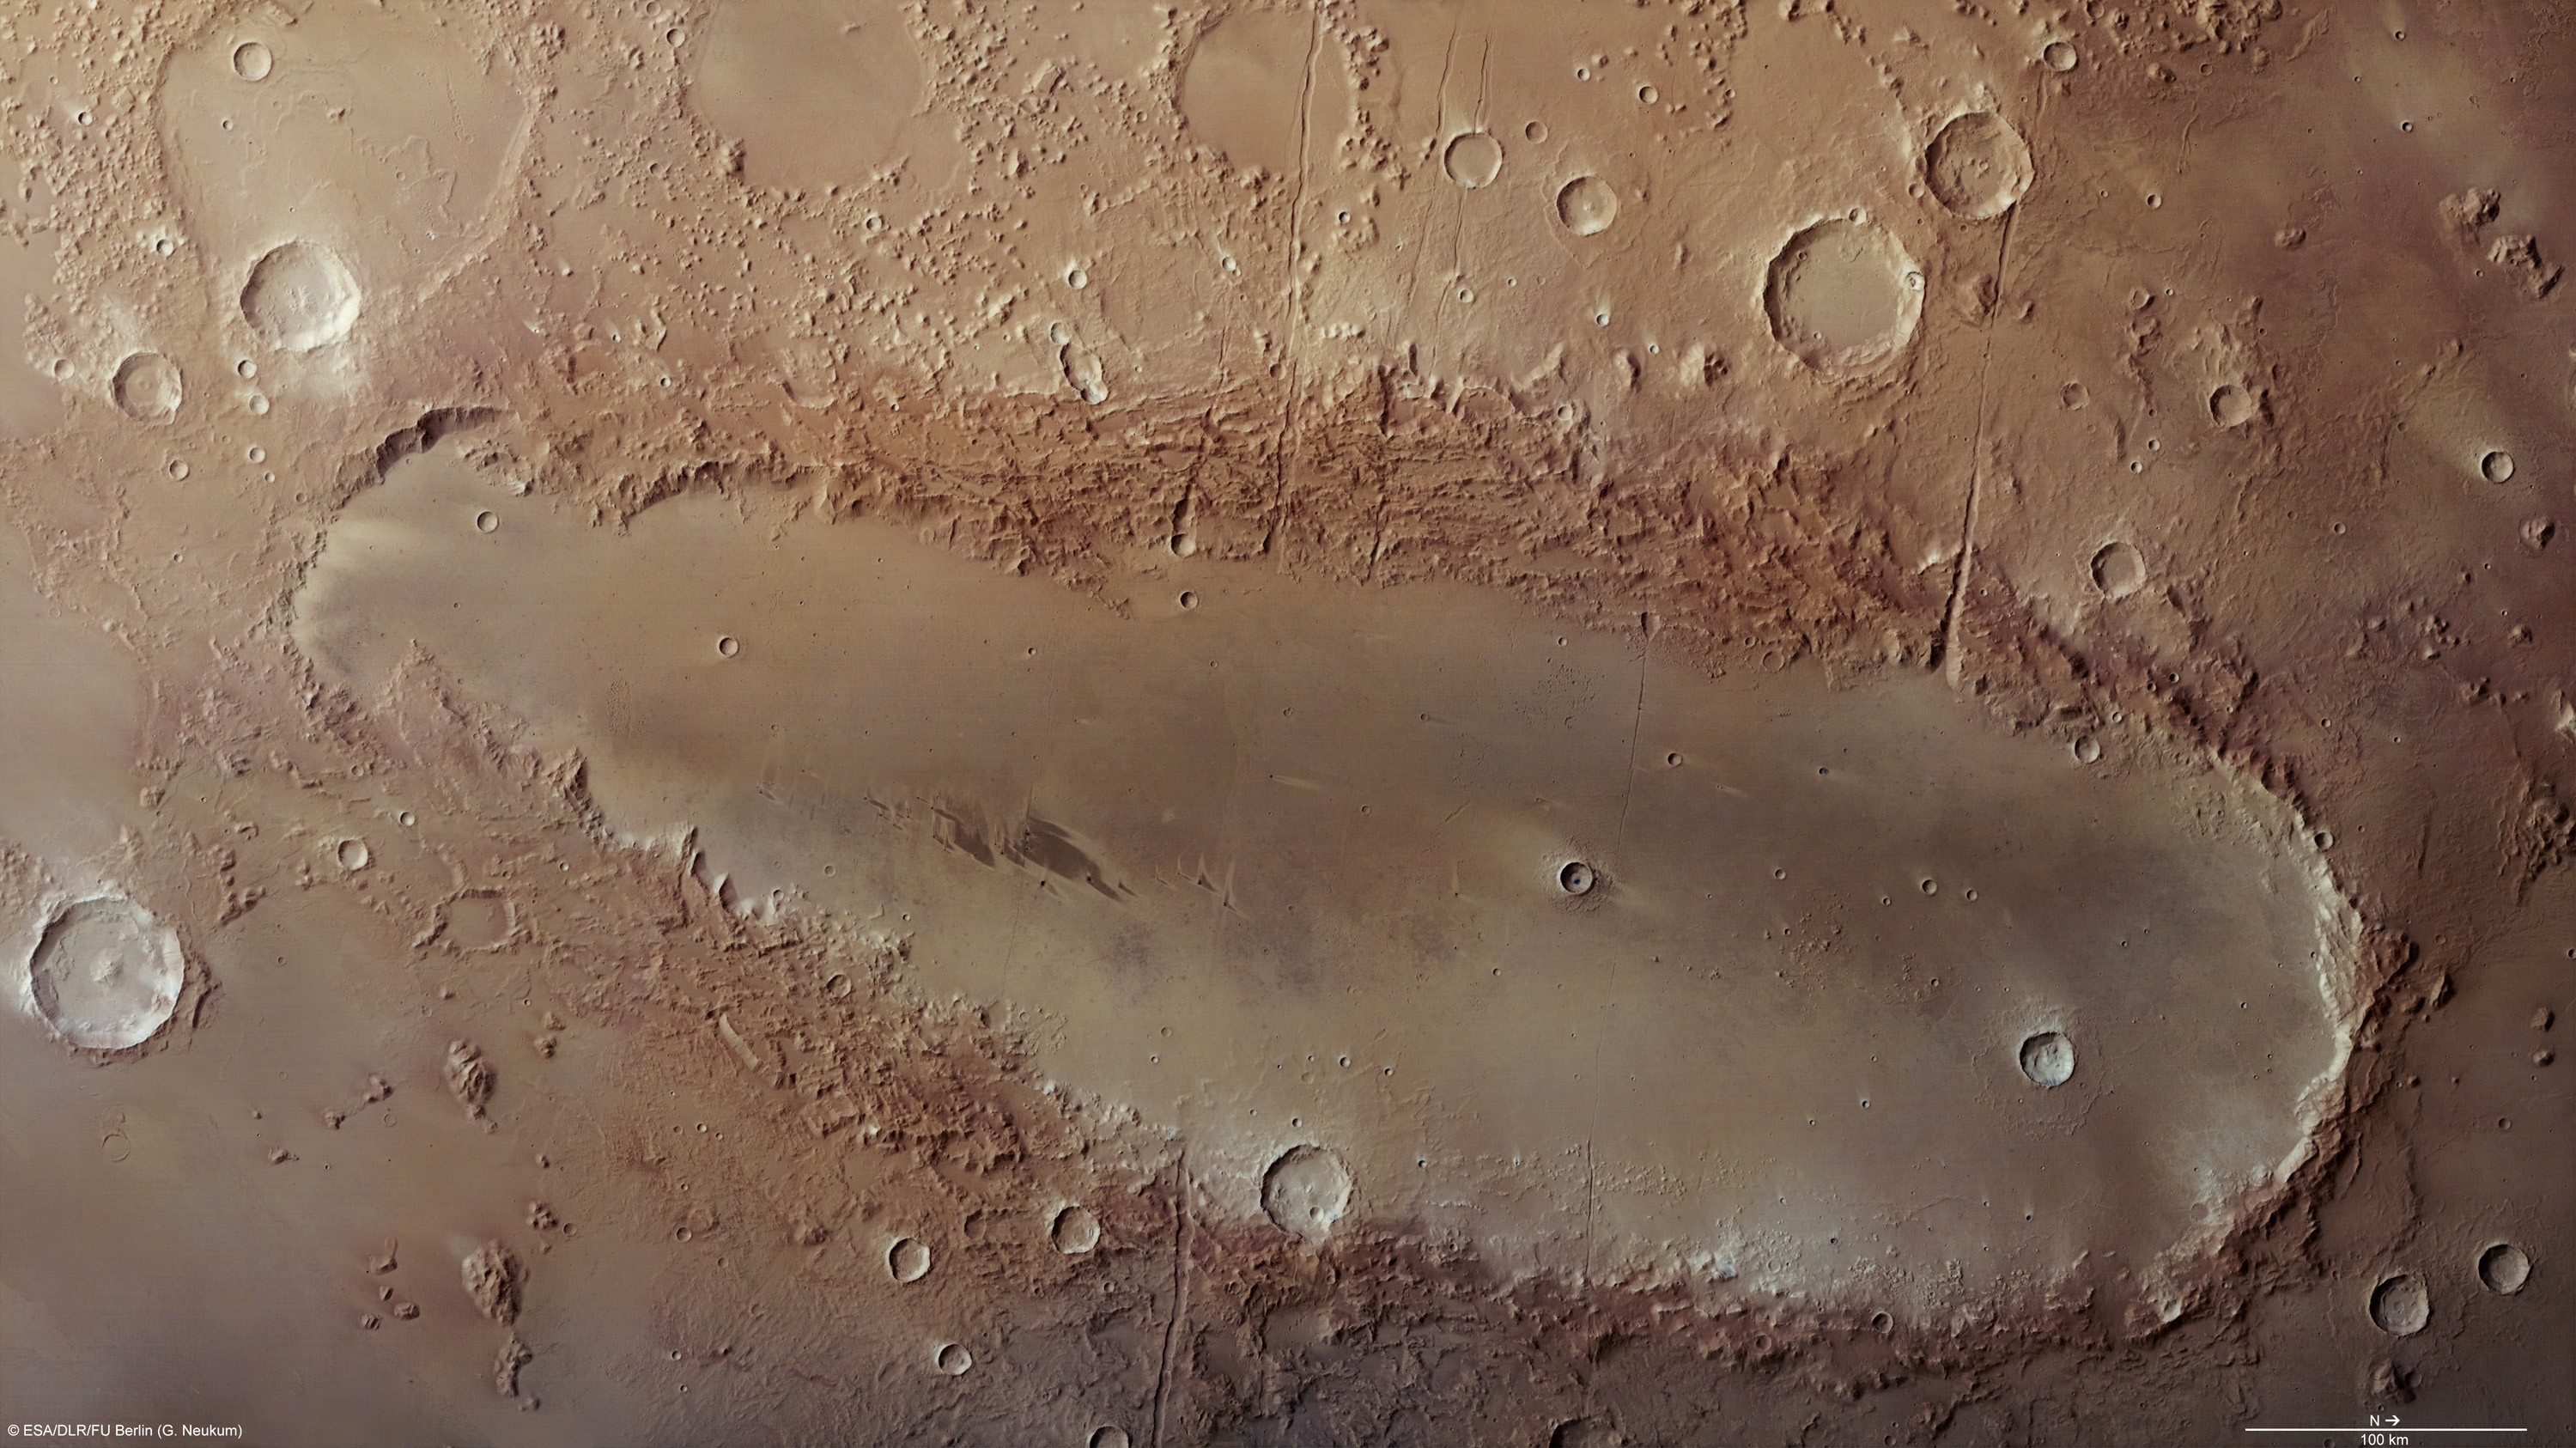 Orcus Patera, une étrange formation martienne allongée photographiée par la sonde européenne Mars Express, intrigue toujours les astronomes. Crédit Esa/DLR/FU Berlin (G. Neukum)